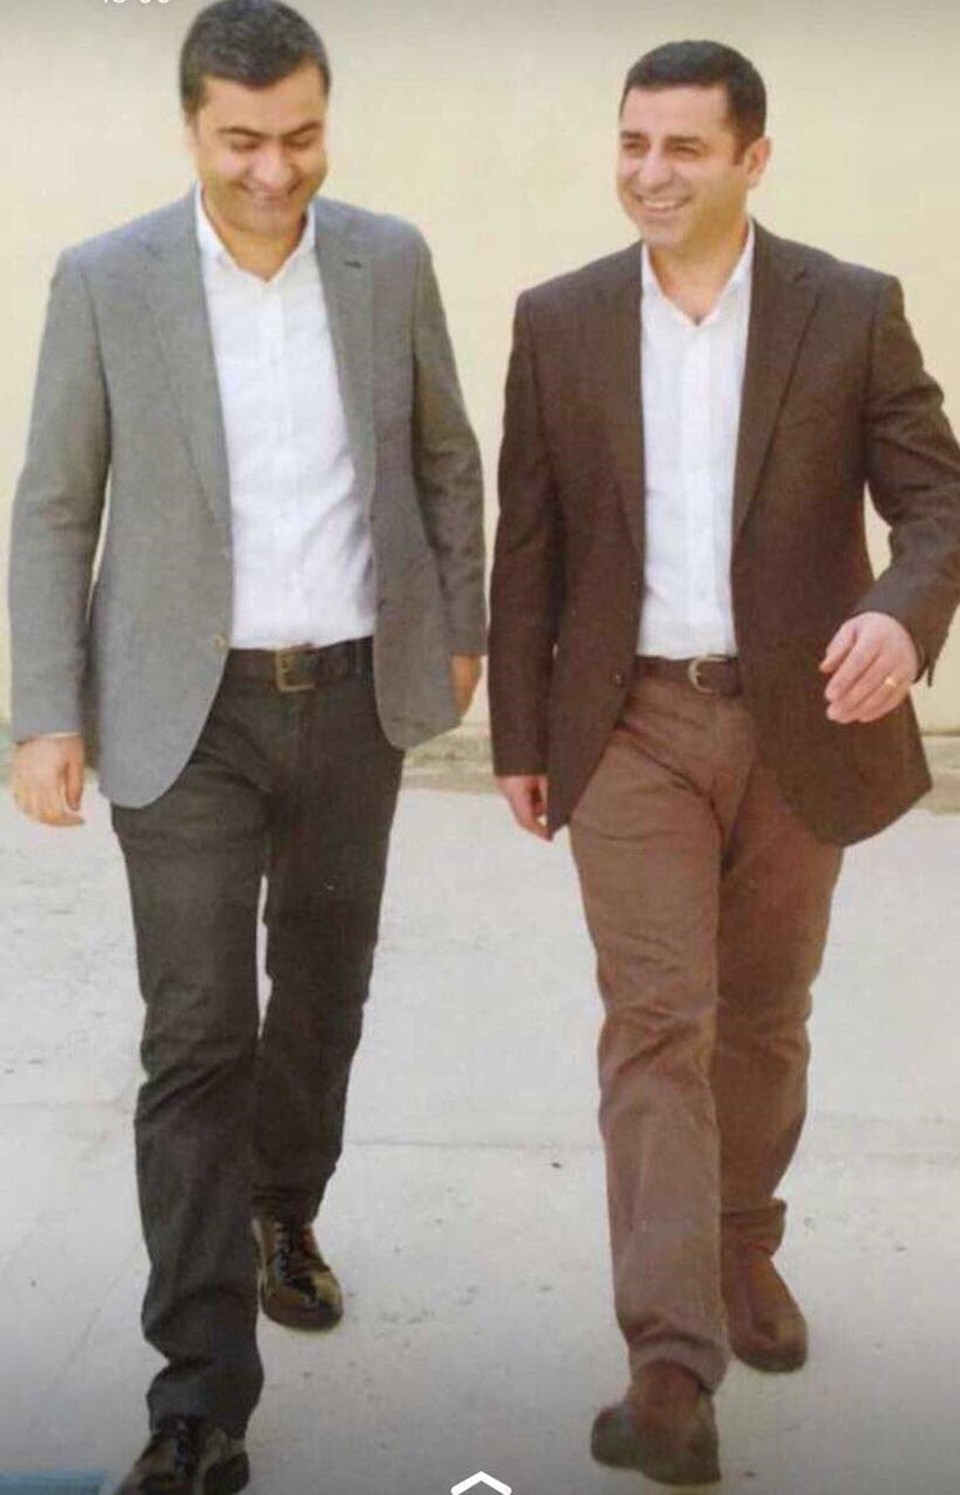 Zeydan HDP Eş Genel Başkanı Demirtaş'la birlikte Edirne Cezaevi'nde tutuklı
